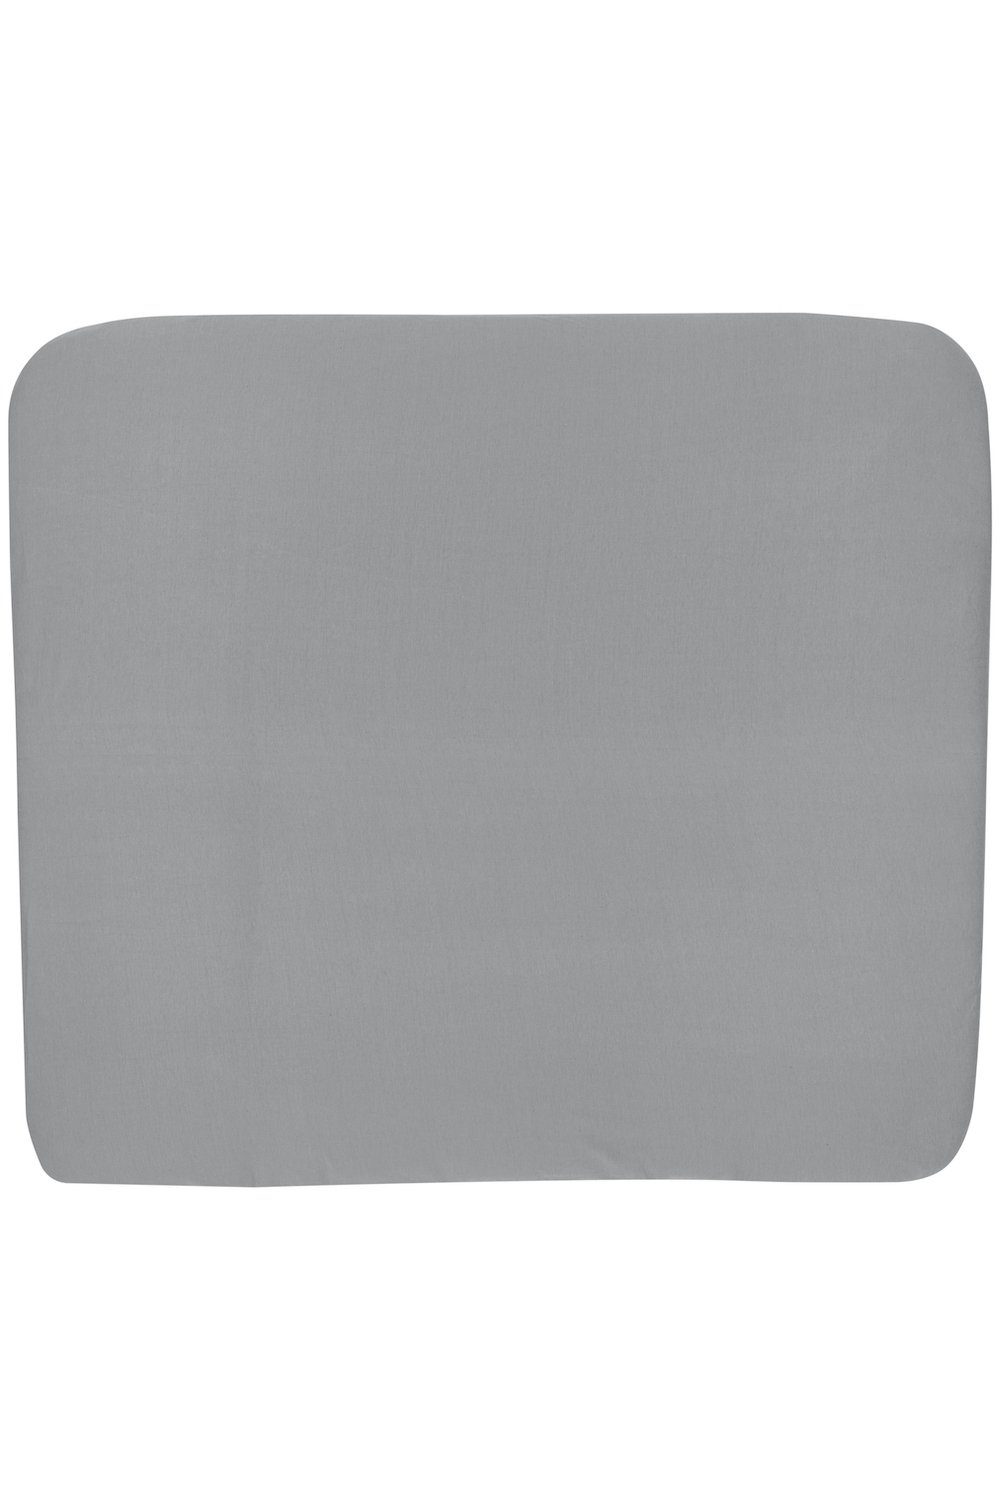 Meyco Baby Wickelauflagenbezug Uni Grey (1-tlg), 85x75cm